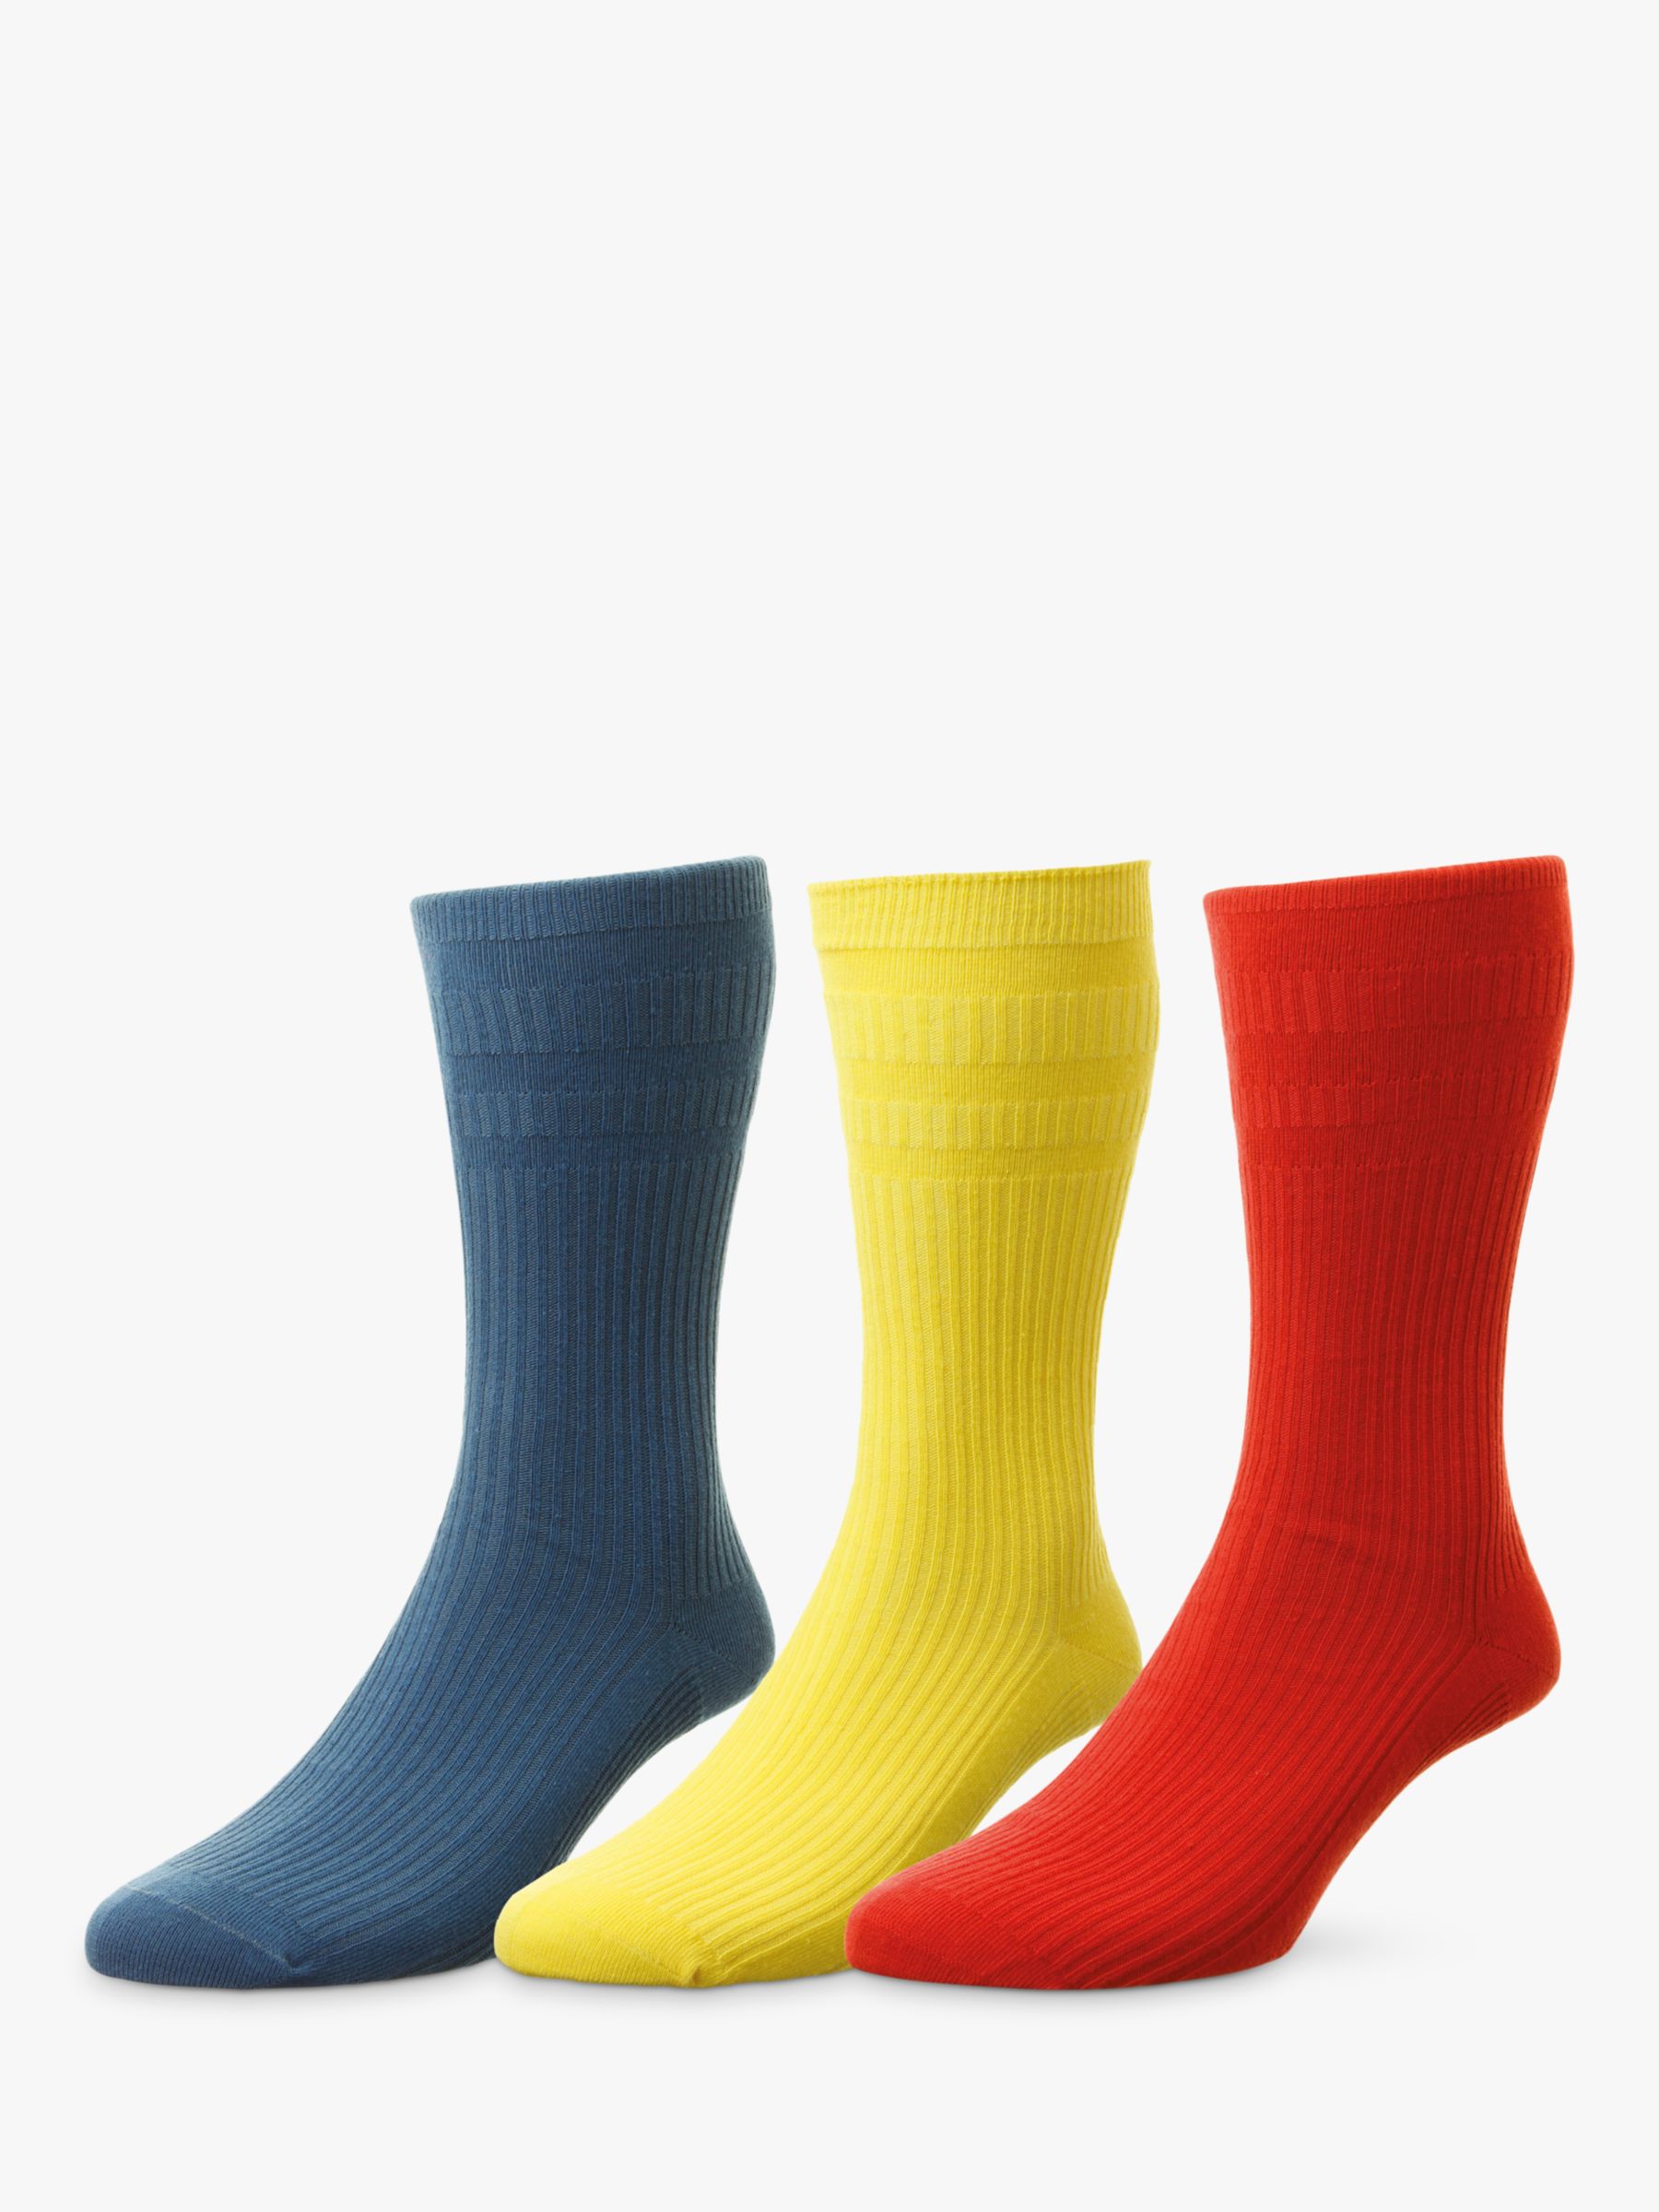 Yellow Socks - Full Range - HJ Hall Socks - Official Site